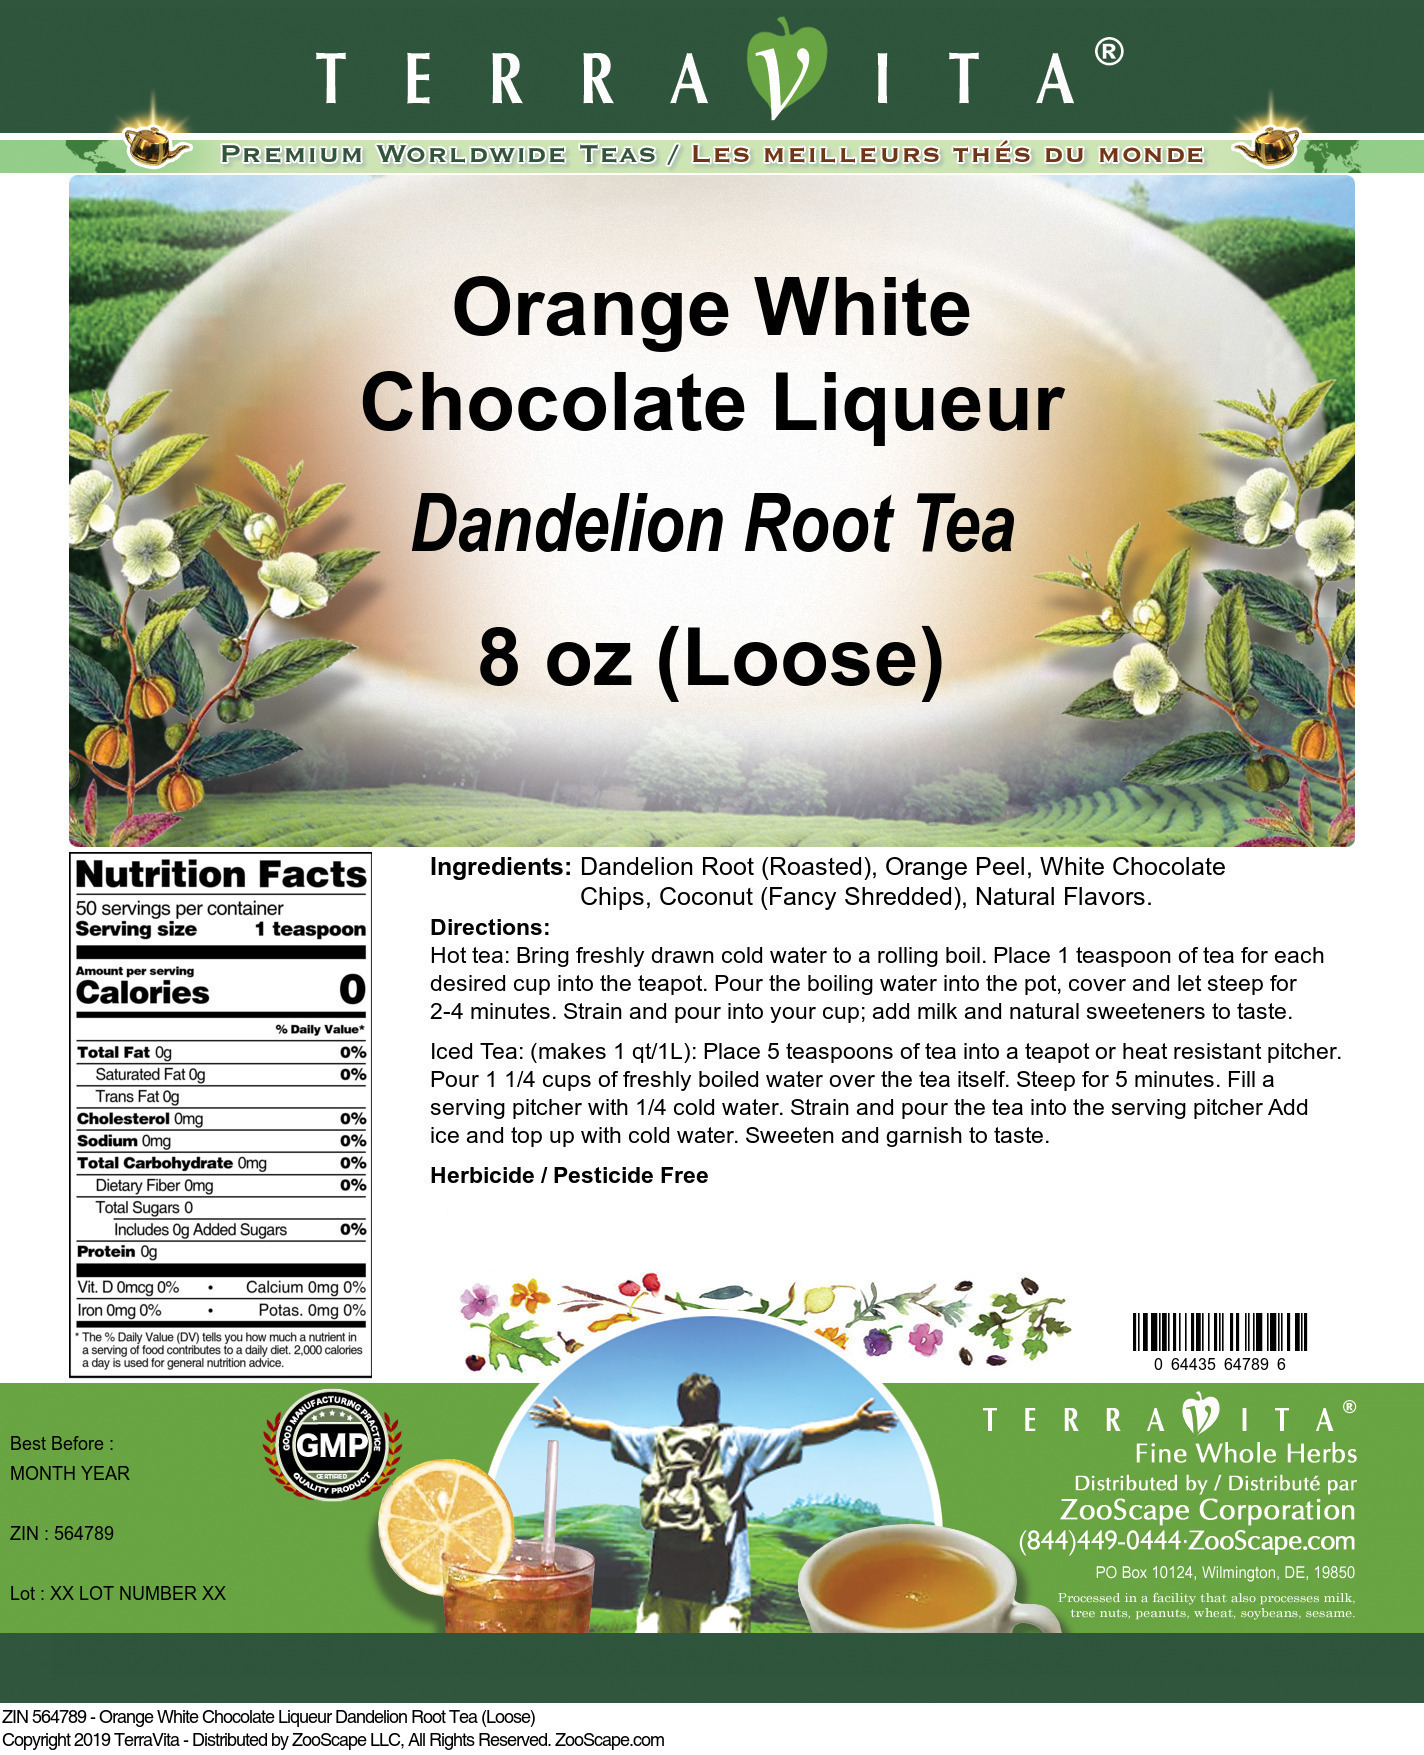 Orange White Chocolate Liqueur Dandelion Root Tea (Loose) - Label